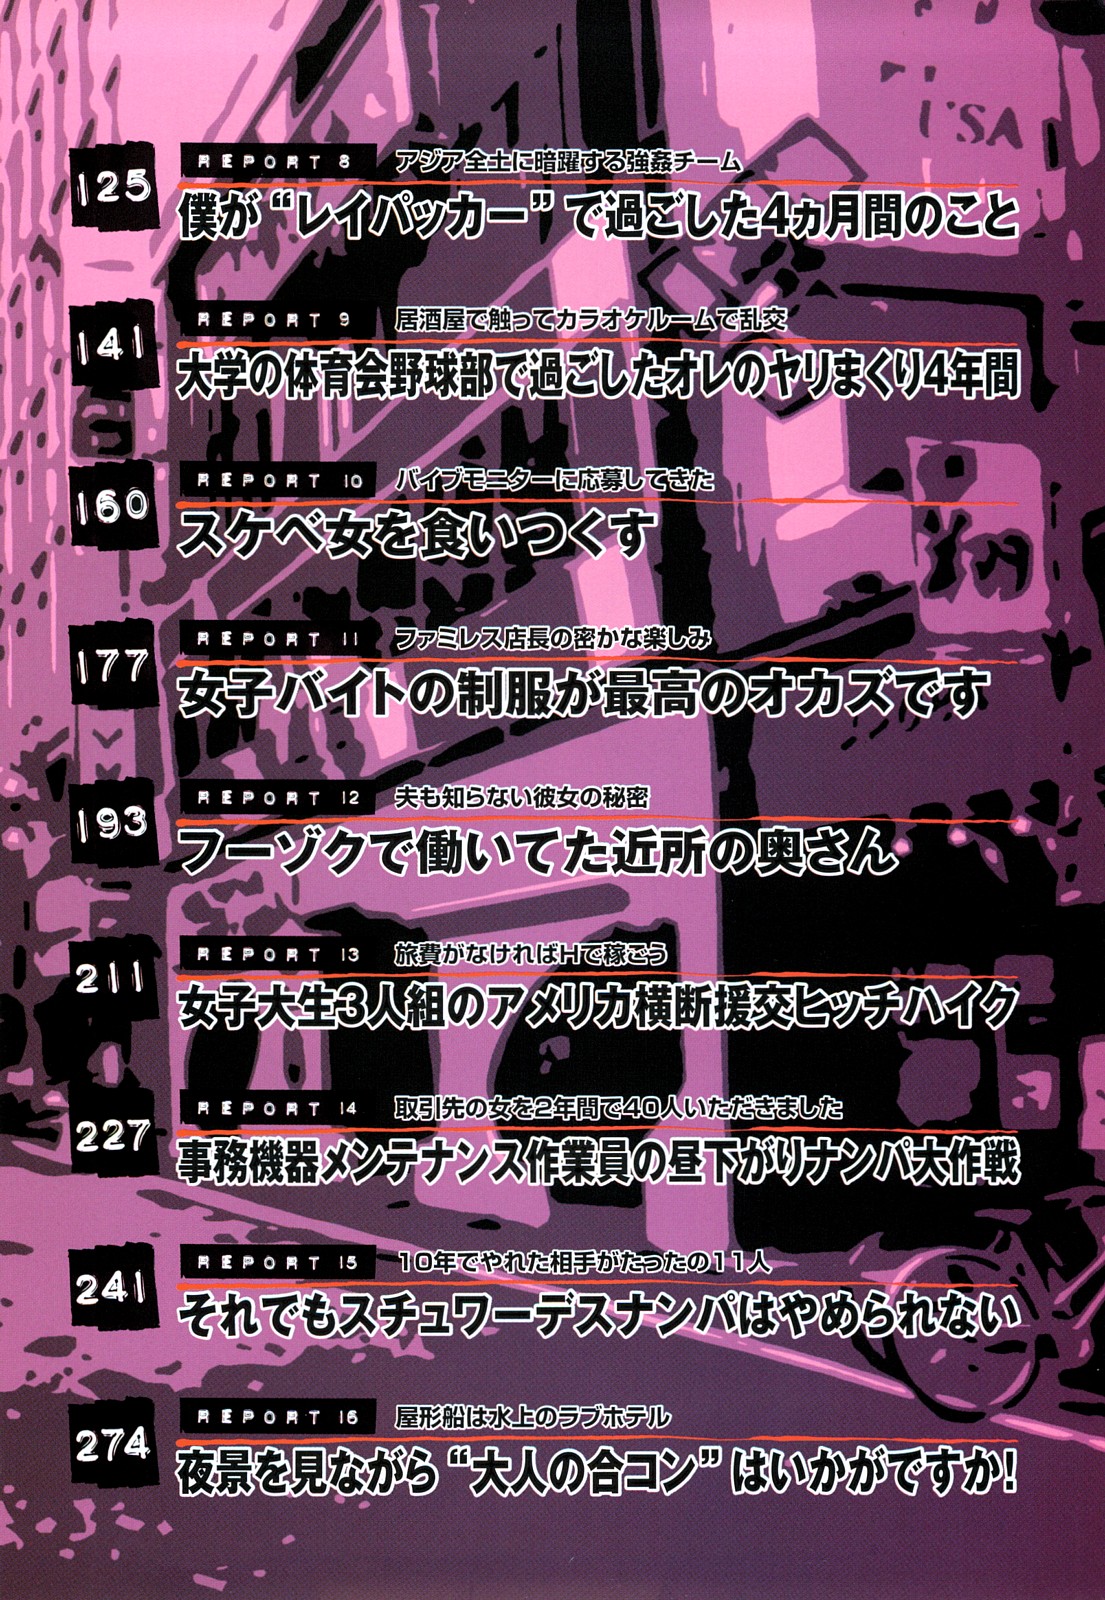 コミック裏モノJAPANVol.18今井のりたつオンライン号